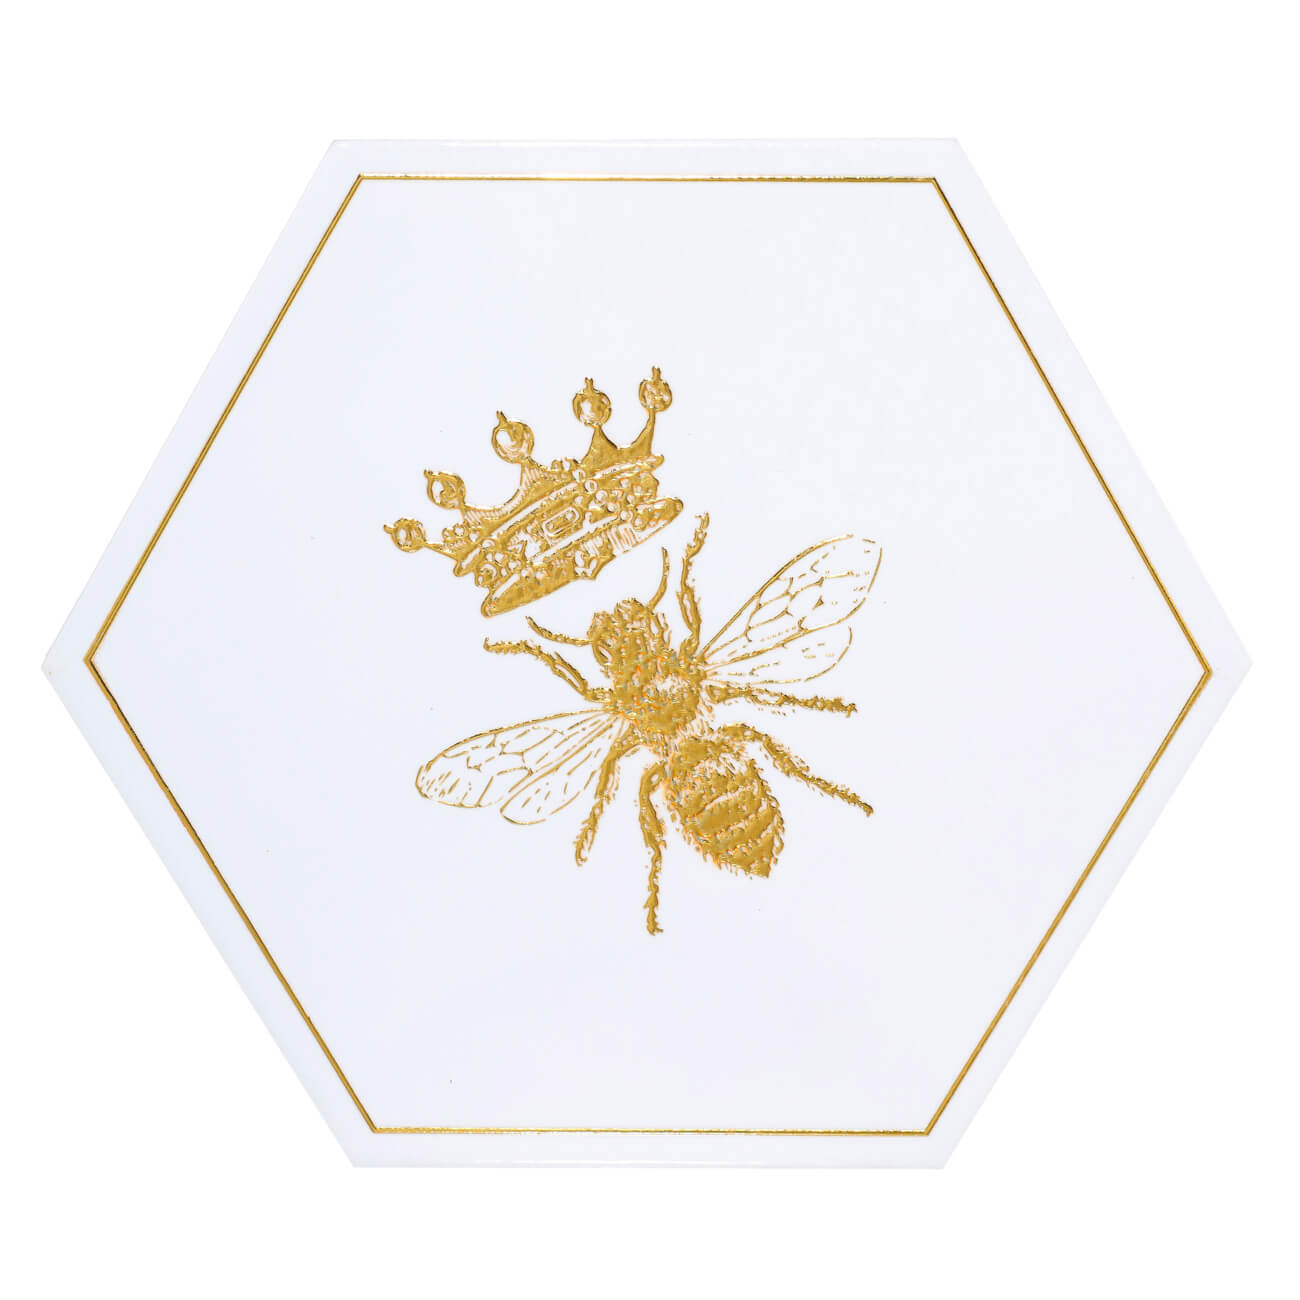 Подставка под горячее, 20 см, керамика/пробка, шестиугольная, белая, Королевская пчела, Honey